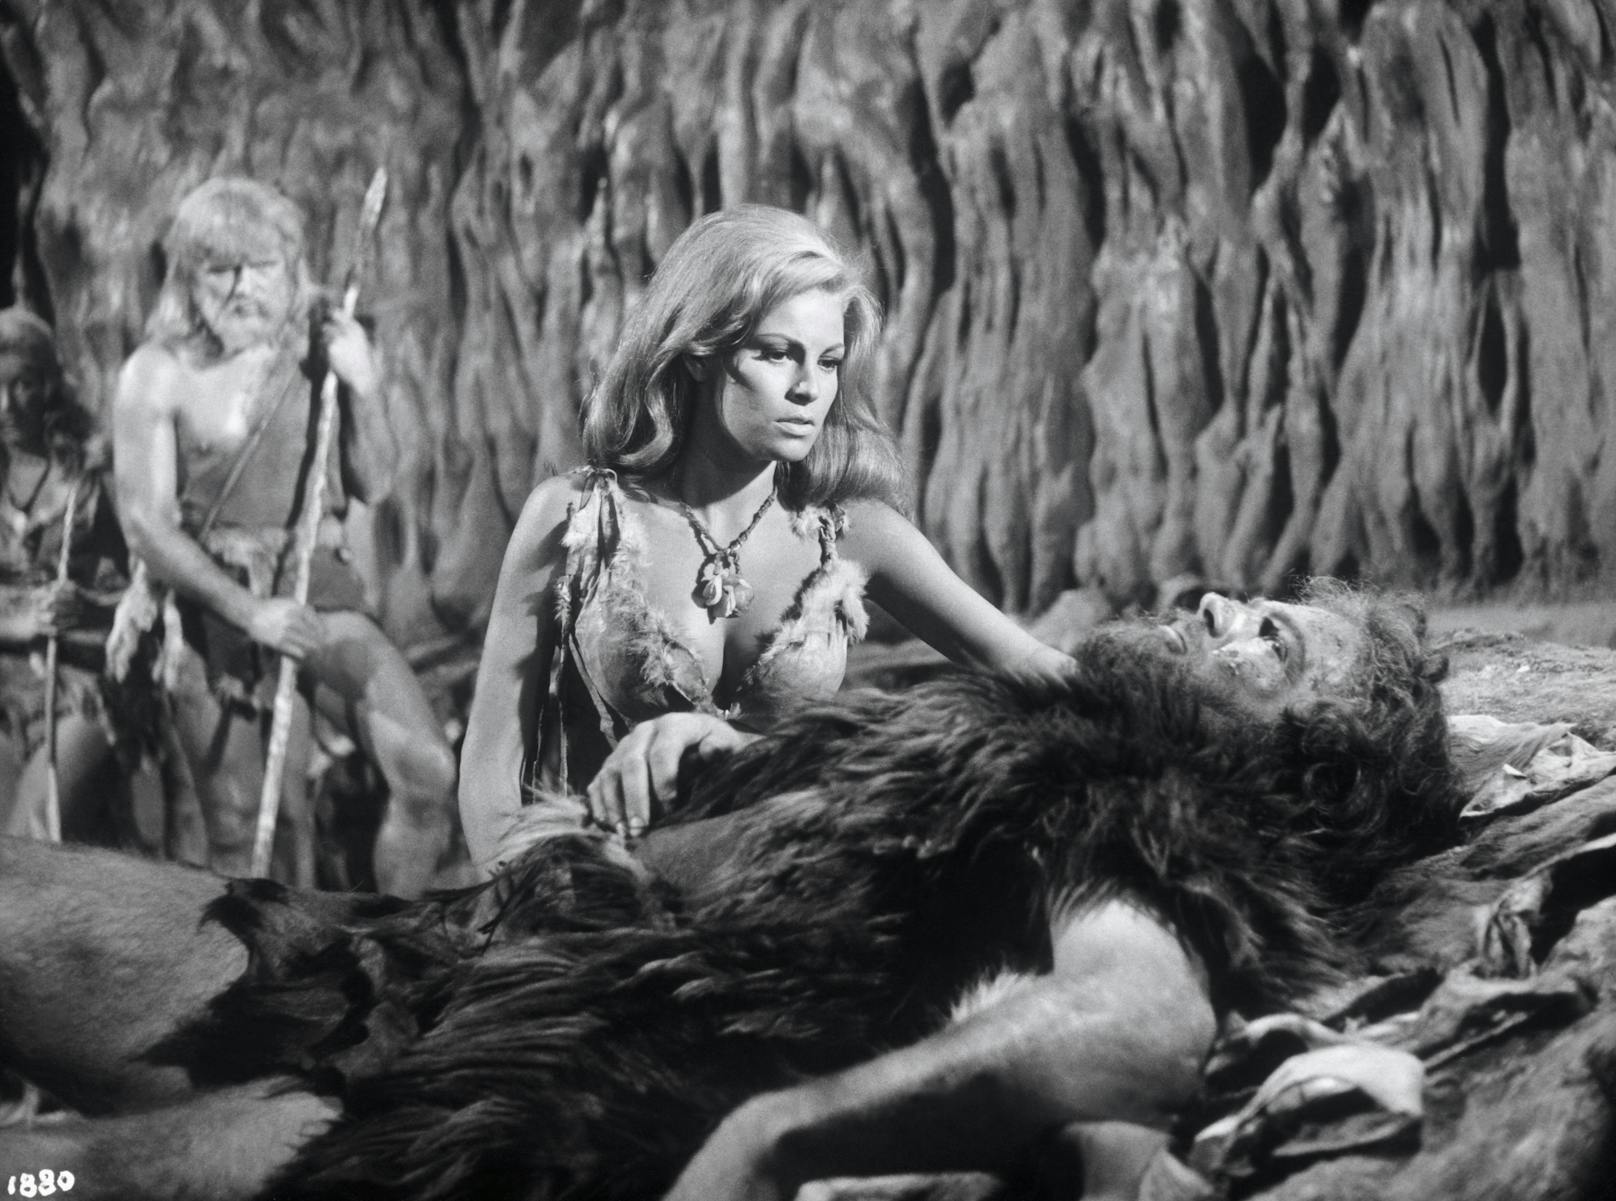 Szenenbilder von <strong>Raquel Welch</strong> in "One Million Years B.C." (deutsch: Eine Million Jahre vor unserer Zeit) aus dem Jahr 1966.